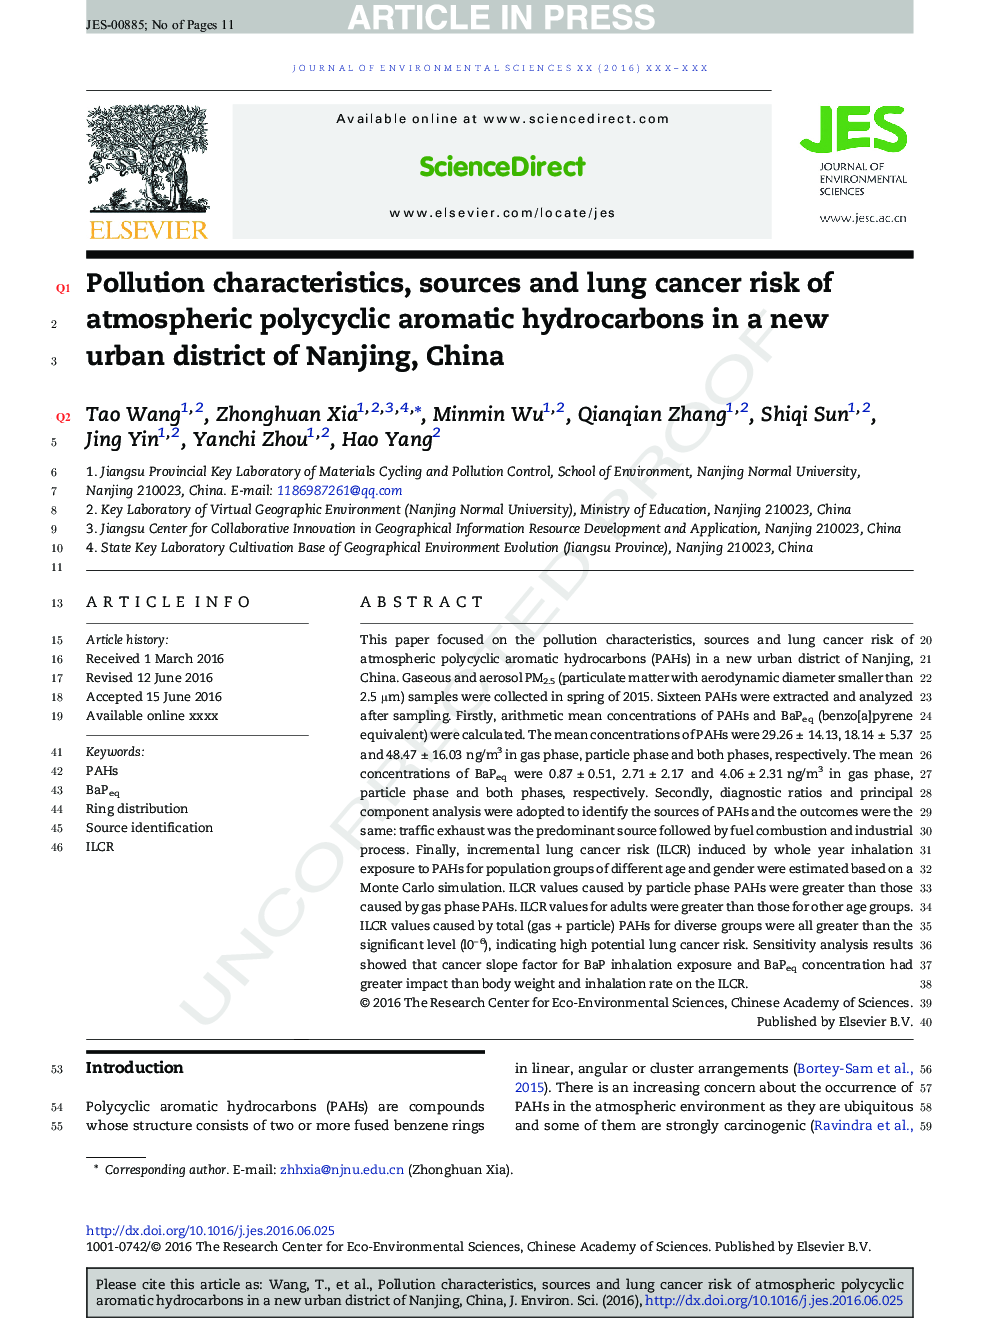 ویژگی های آلودگی، منابع و سرطان ریه خطر ابتلا به هیدروکربن های آروماتیک چندساله جو در یک منطقه شهری جدید در نانجینگ، چین 